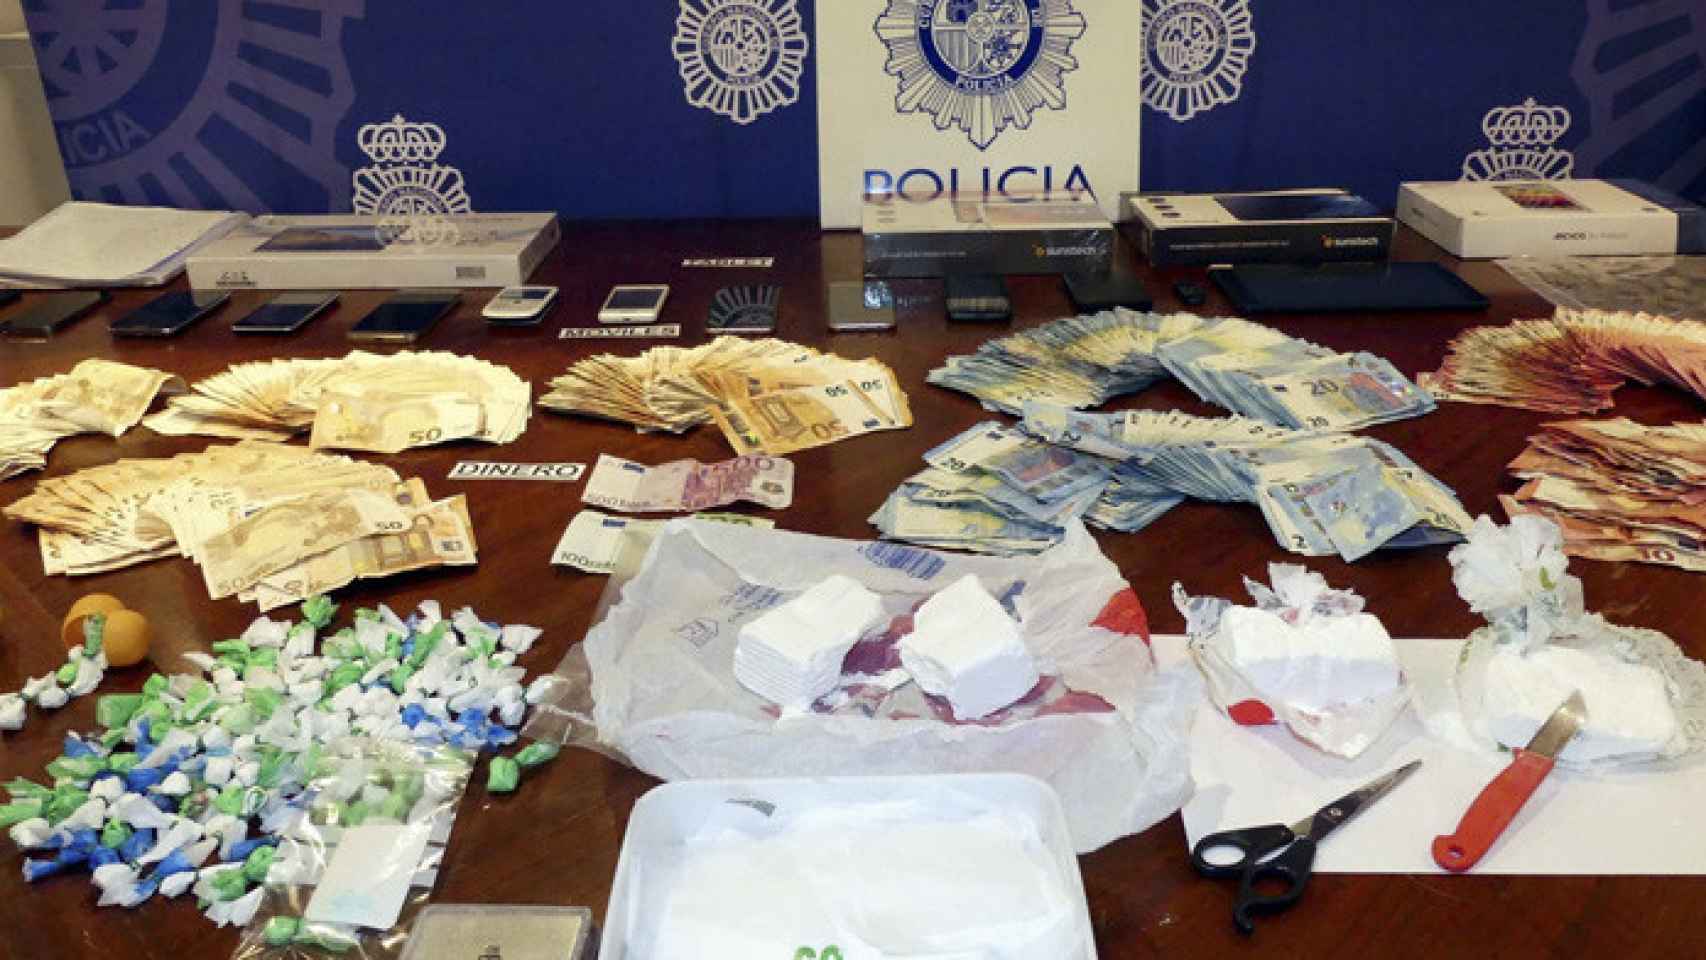 Palencia-cocaina-policia-nacional